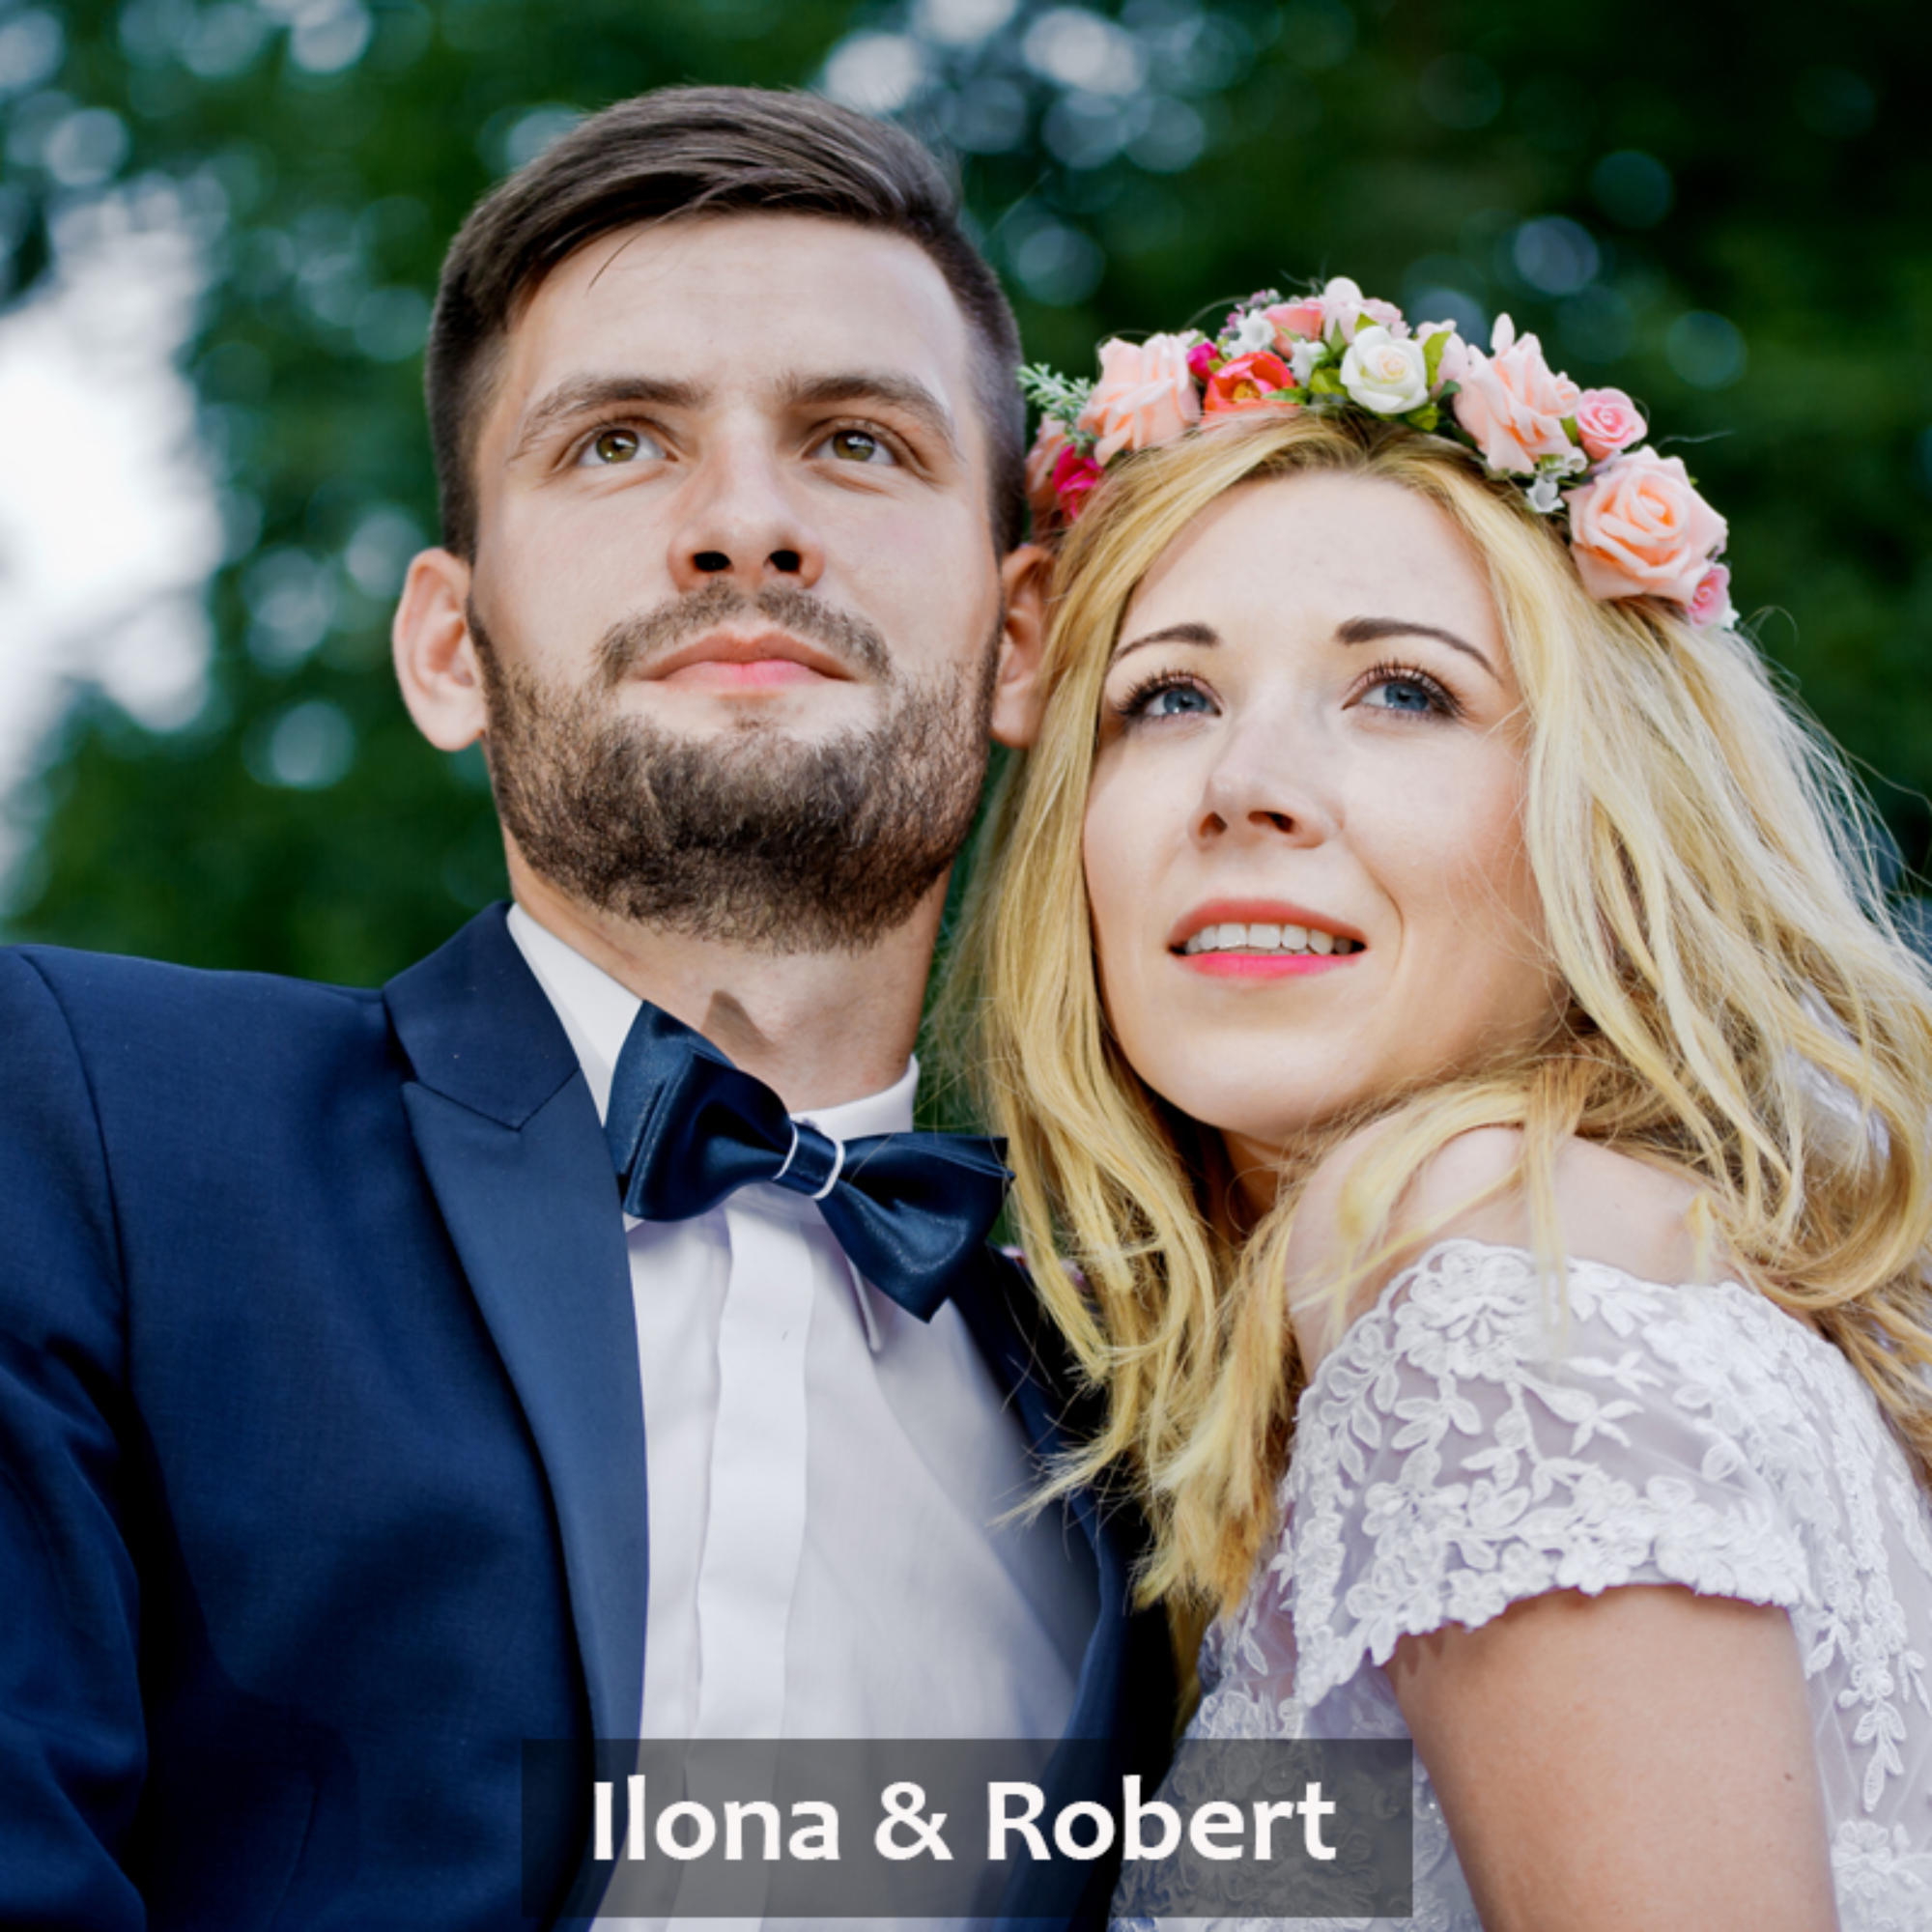 Ilona & Robert